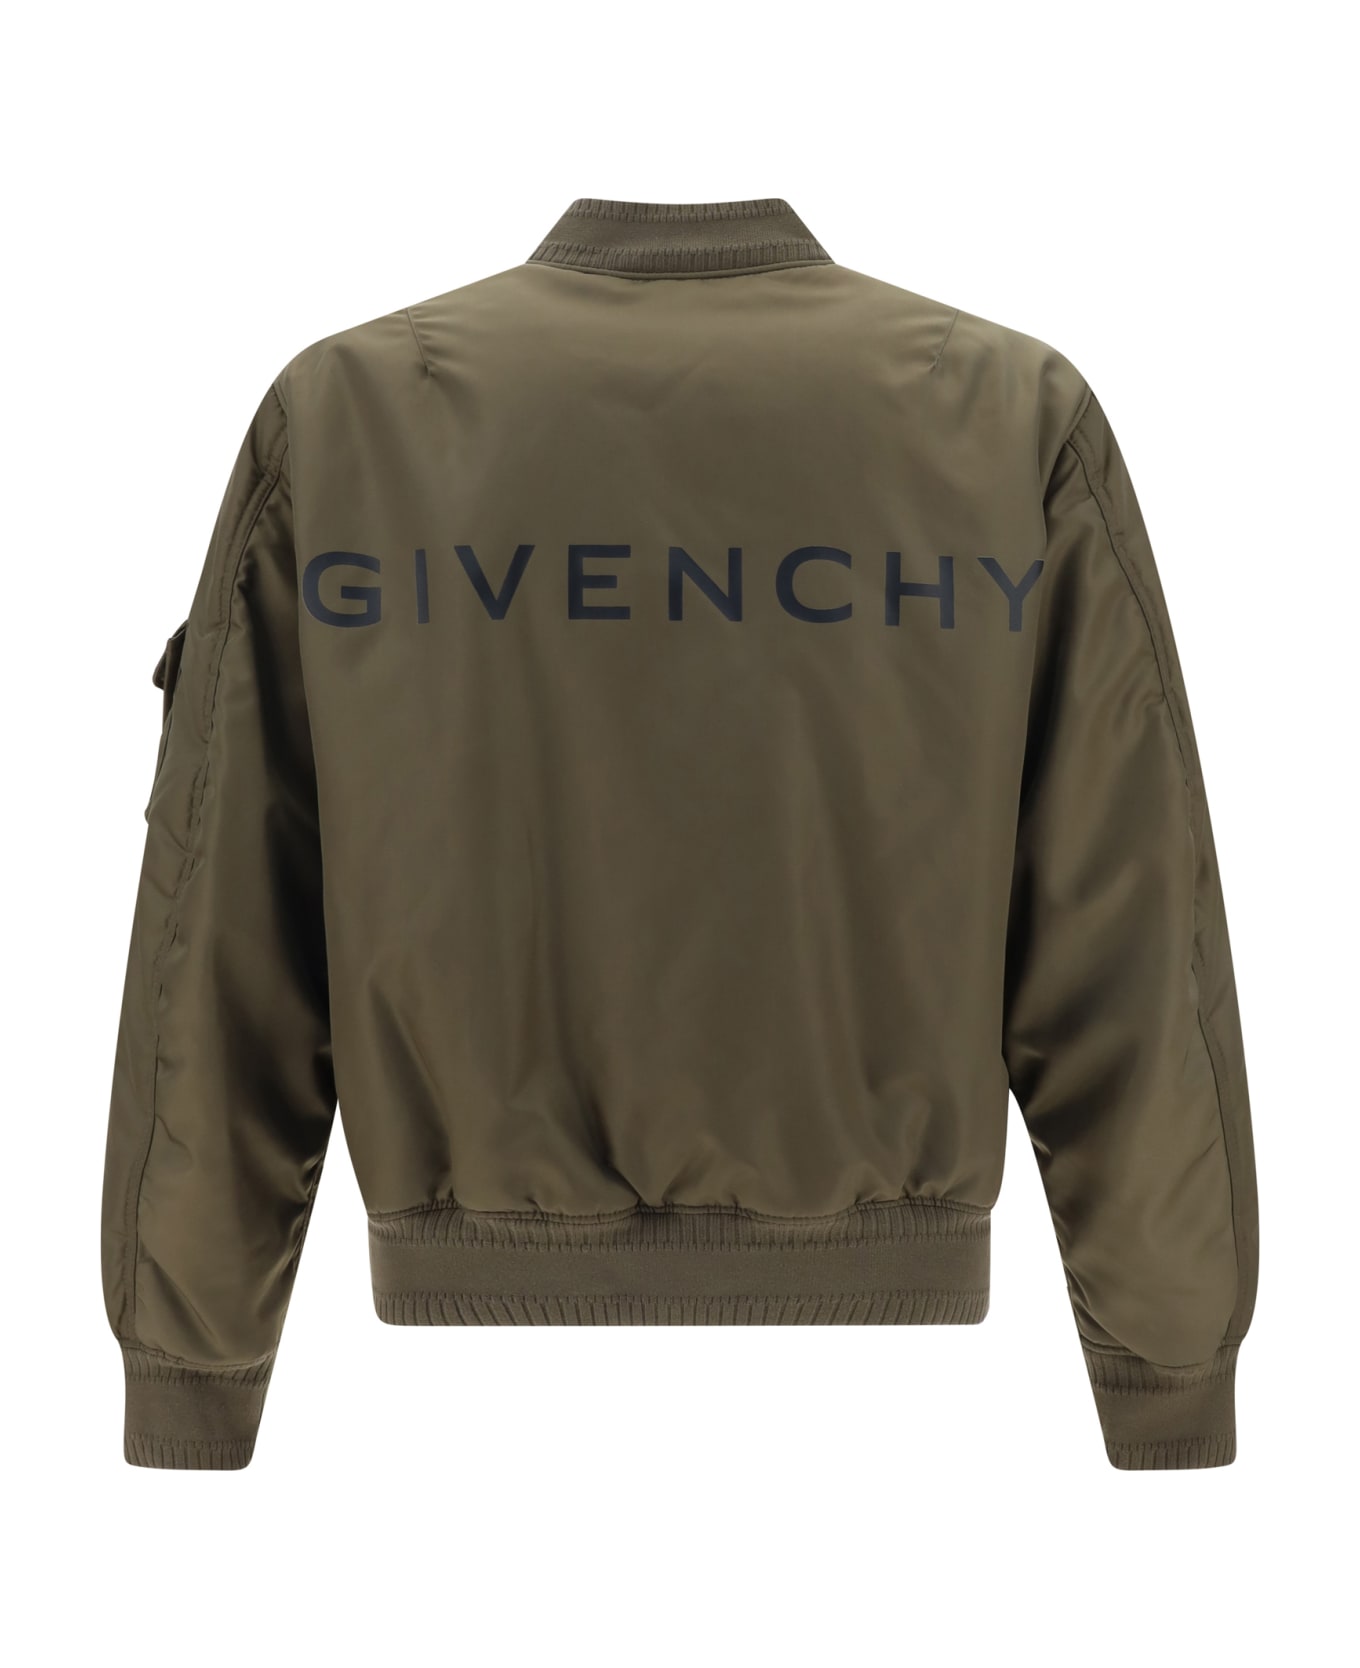 Givenchy Bomber Jacket - Khaki ジャケット